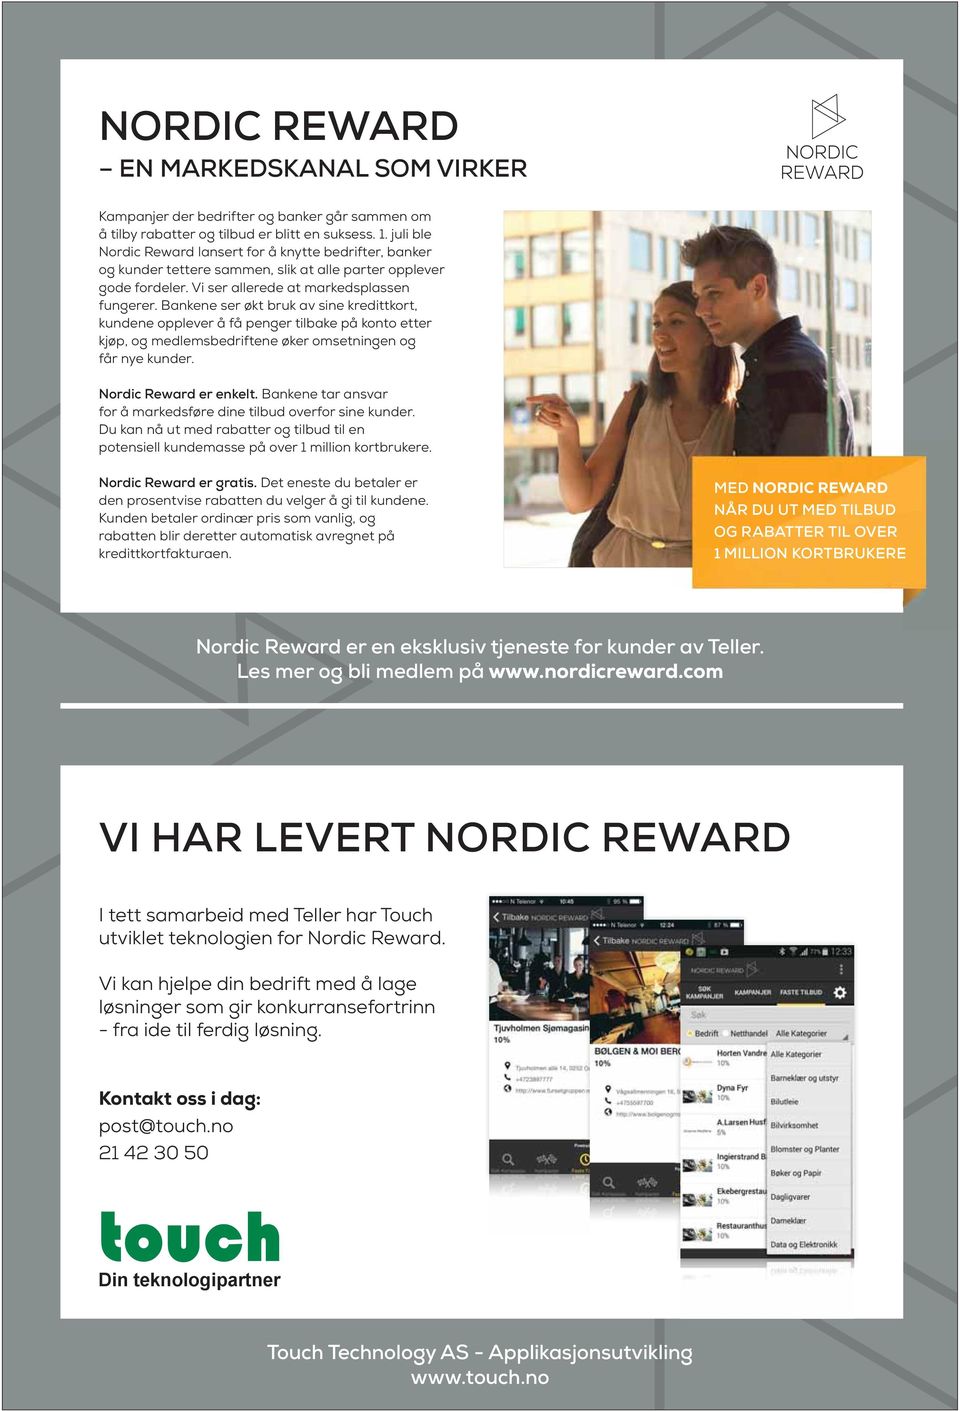 Bankene ser økt bruk av sine kredittkort, kundene opplever å få penger tilbake på konto etter kjøp, og medlemsbedriftene øker omsetningen og får nye kunder. Nordic Reward er enkelt.